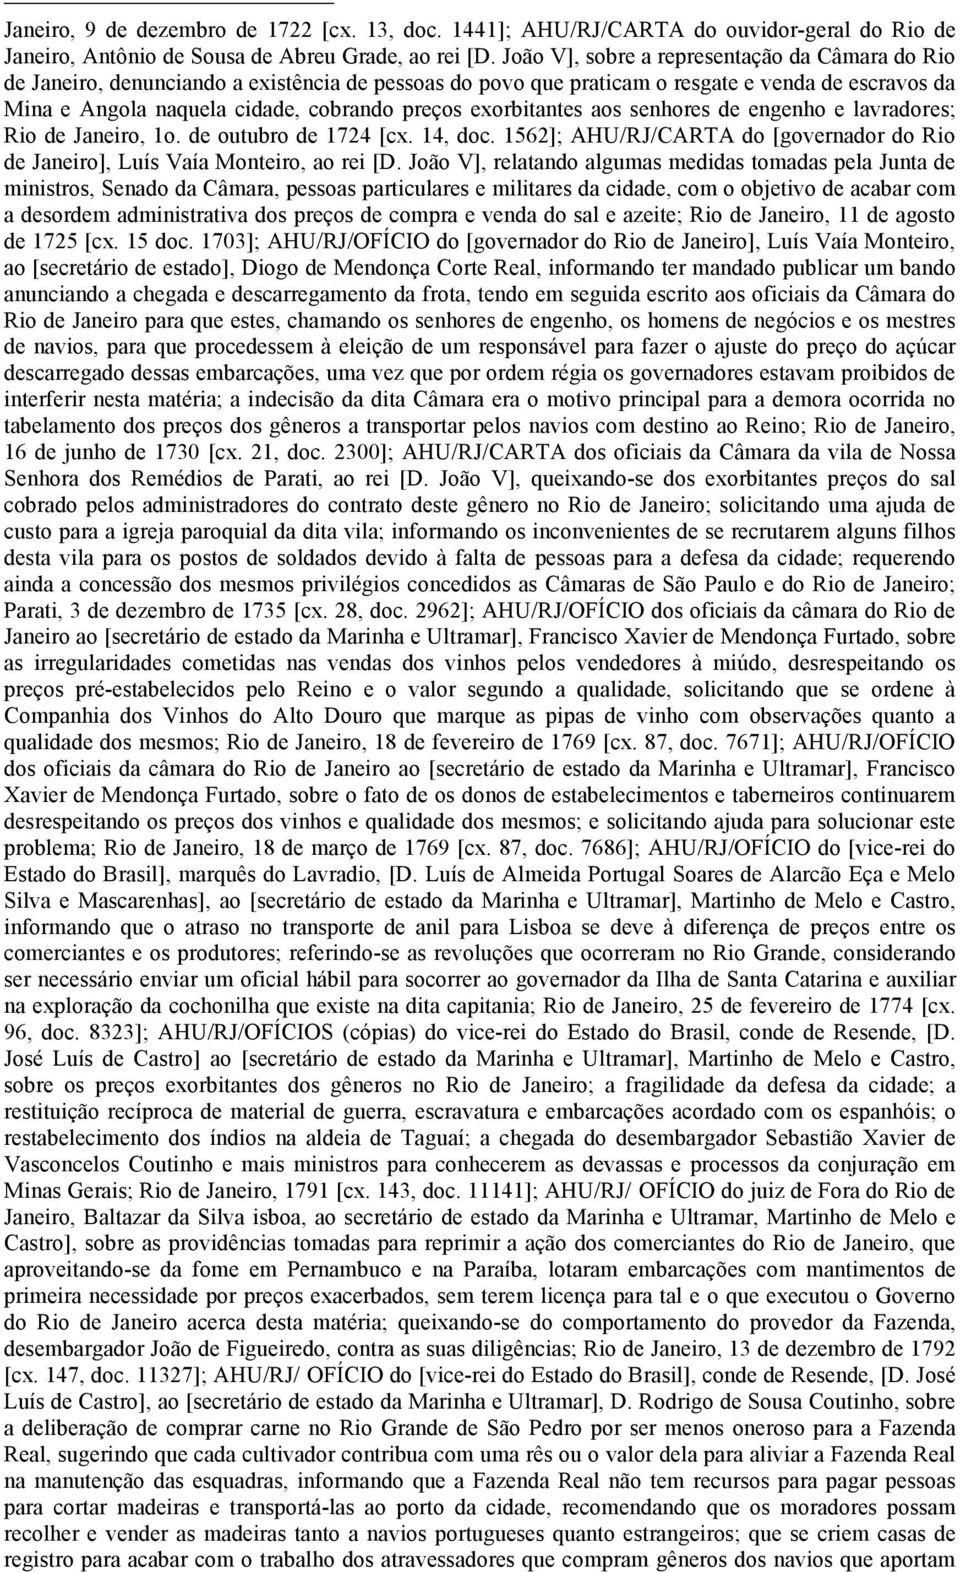 exorbitantes aos senhores de engenho e lavradores; Rio de Janeiro, 1o. de outubro de 1724 [cx. 14, doc. 1562]; AHU/RJ/CARTA do [governador do Rio de Janeiro], Luís Vaía Monteiro, ao rei [D.